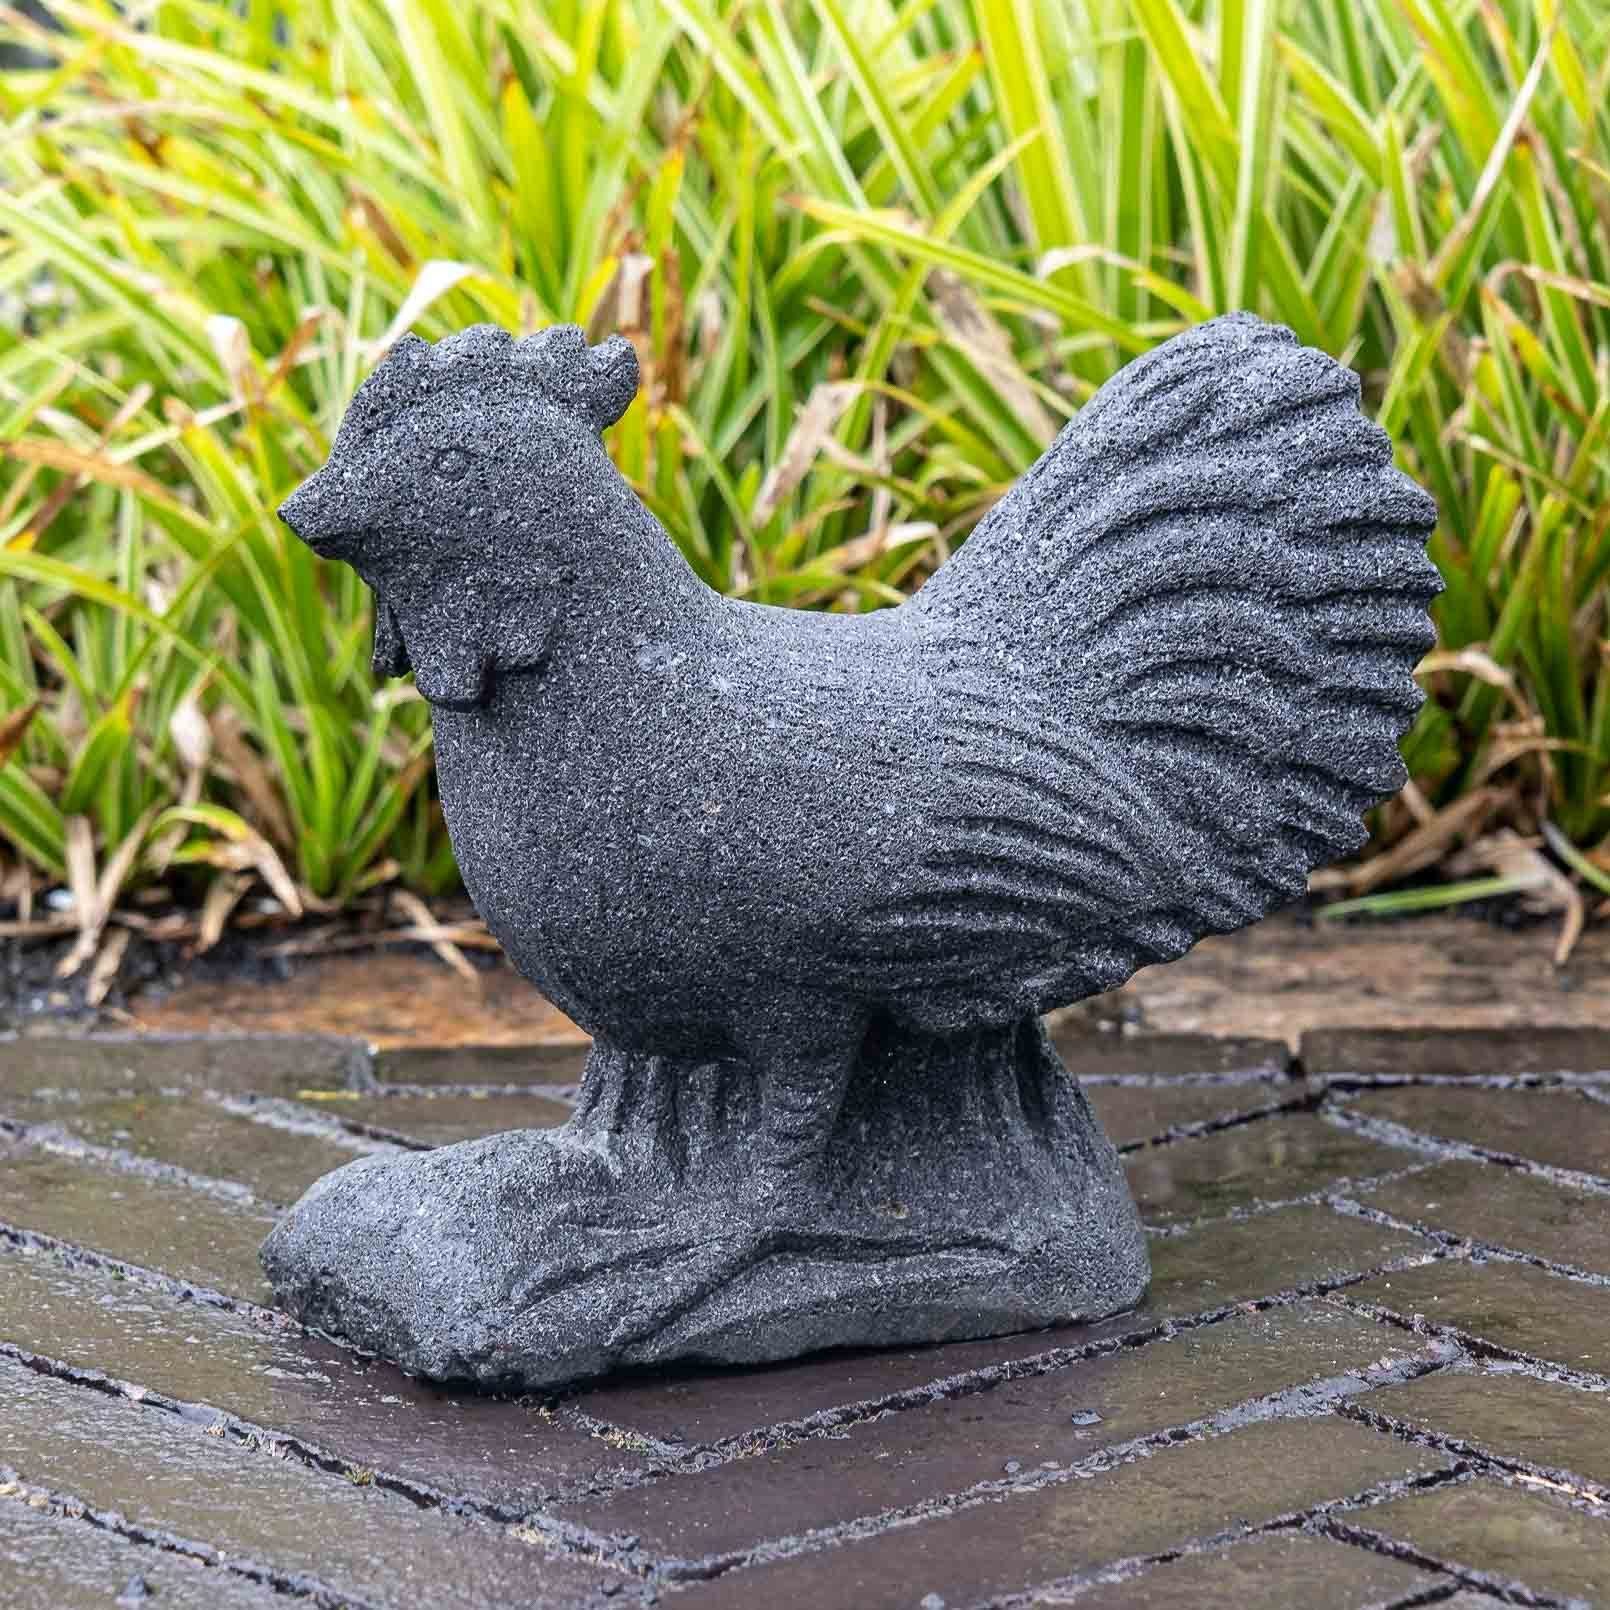 IDYL Gartenfigur IDYL Lavastein Figur Naturprodukt und Regen robust witterungsbeständig sehr – ein Huhn, gegen – UV-Strahlung. Frost, Lavastein–